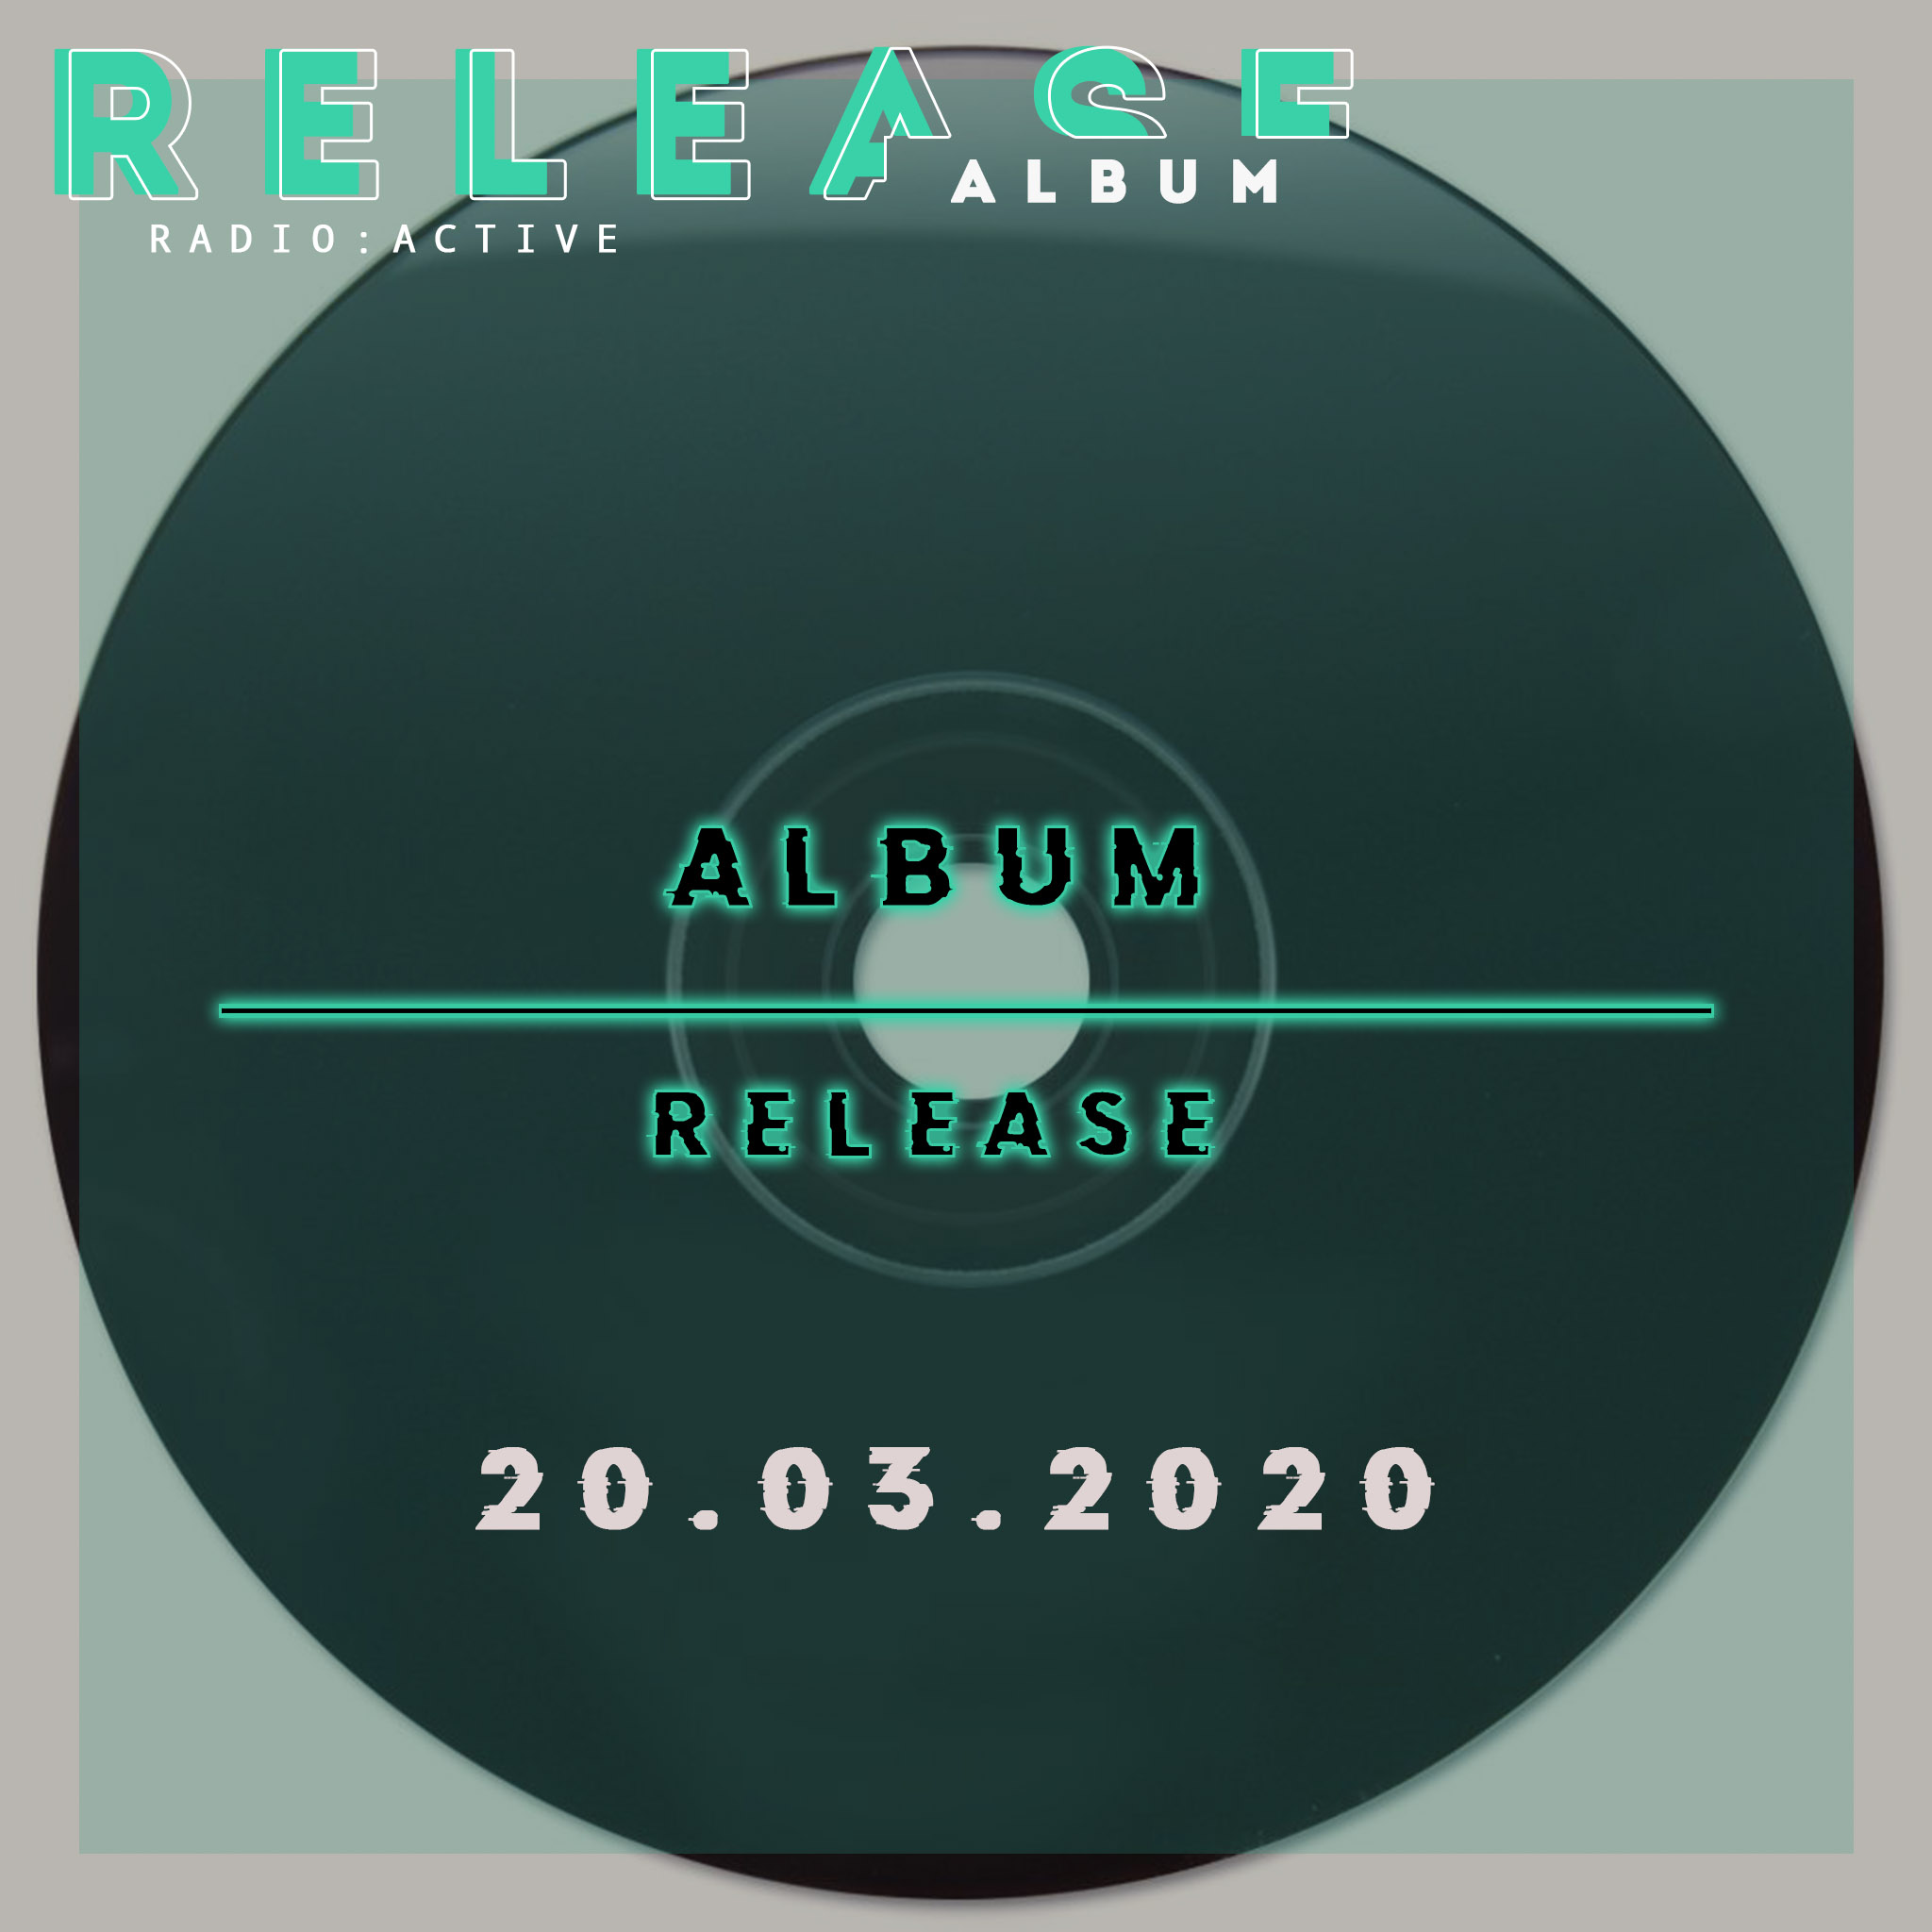 Album Release 20.03.2020